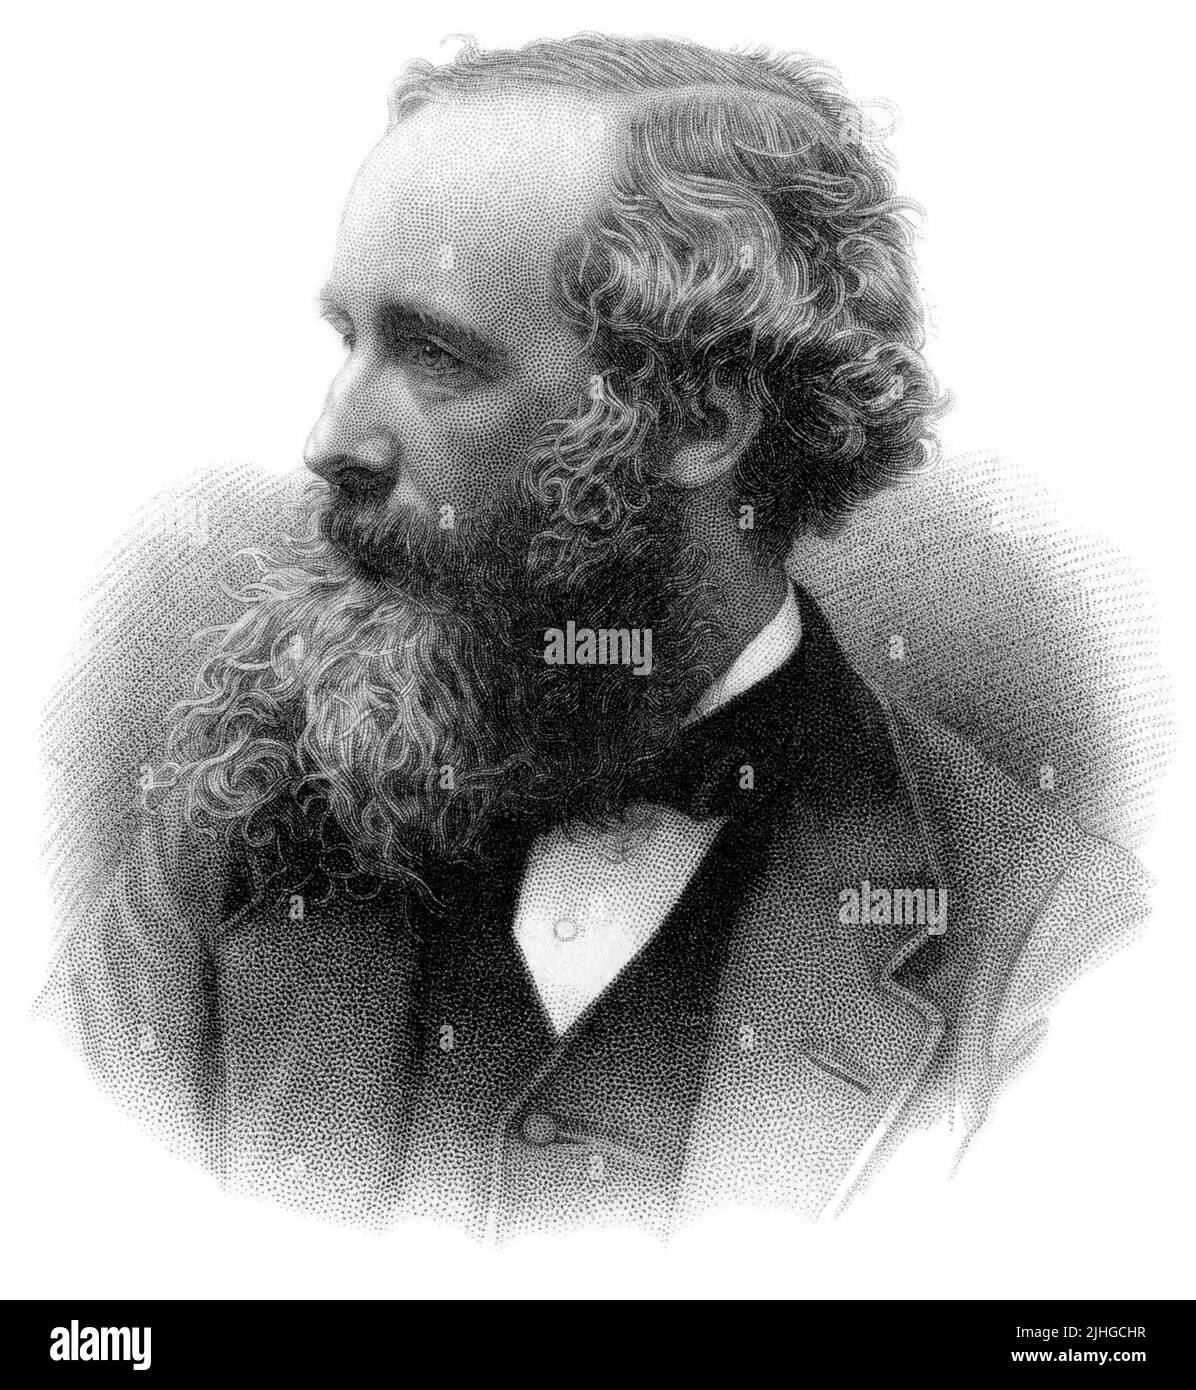 James Clerk Maxwell FRSE FRS (1831–1879) était un mathématicien et physicien écossais responsable de la théorie classique du rayonnement électromagnétique, qui a été la première théorie à décrire l'électricité, le magnétisme et la lumière comme différentes manifestations du même phénomène. Maxwell est considéré par certains comme le Père de la physique moderne. Banque D'Images